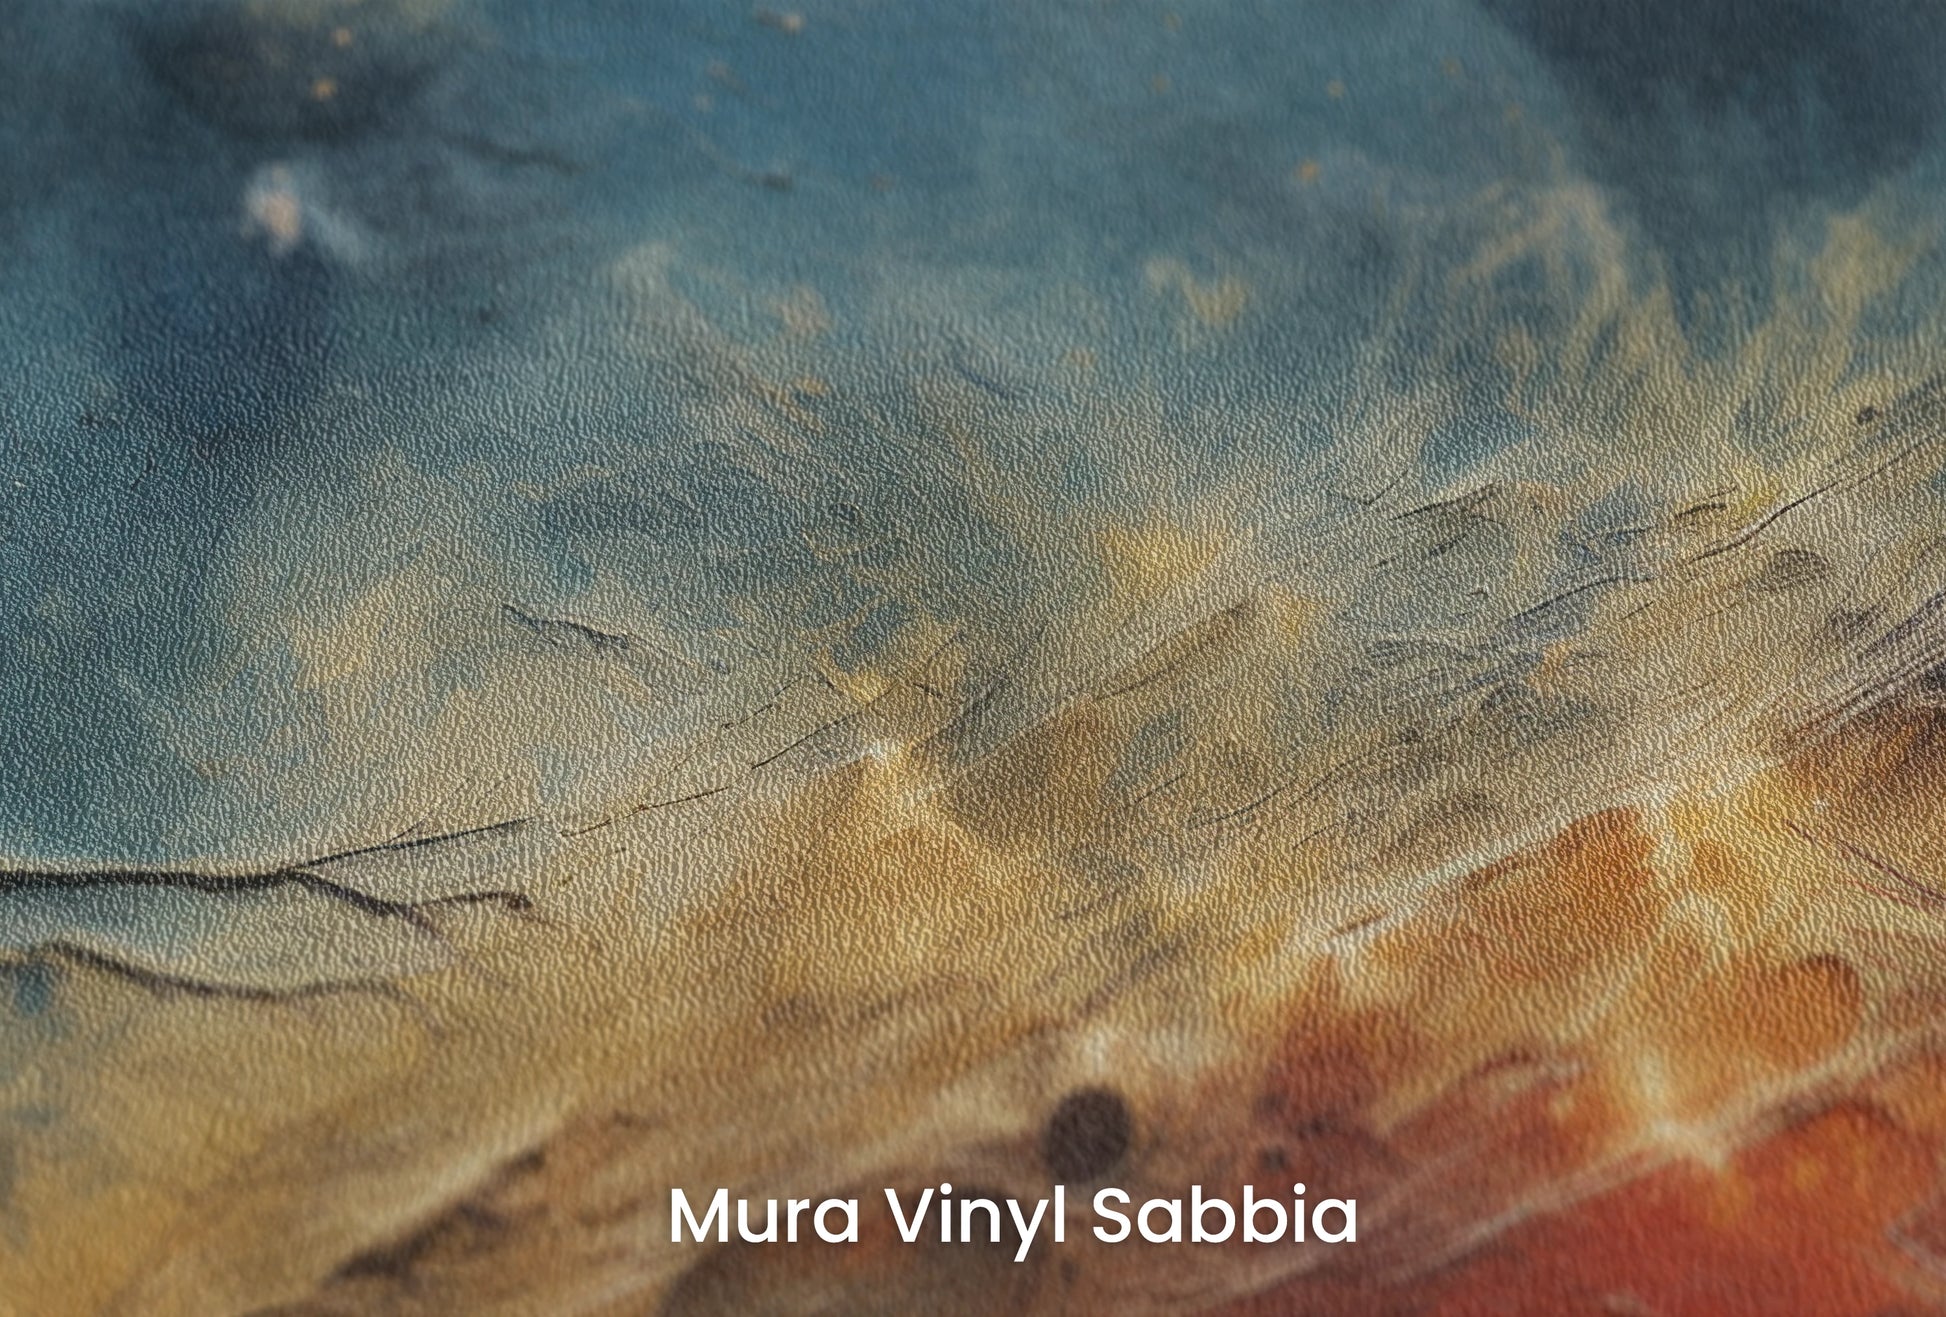 Zbliżenie na artystyczną fototapetę o nazwie Celestial Harmony na podłożu Mura Vinyl Sabbia struktura grubego ziarna piasku.